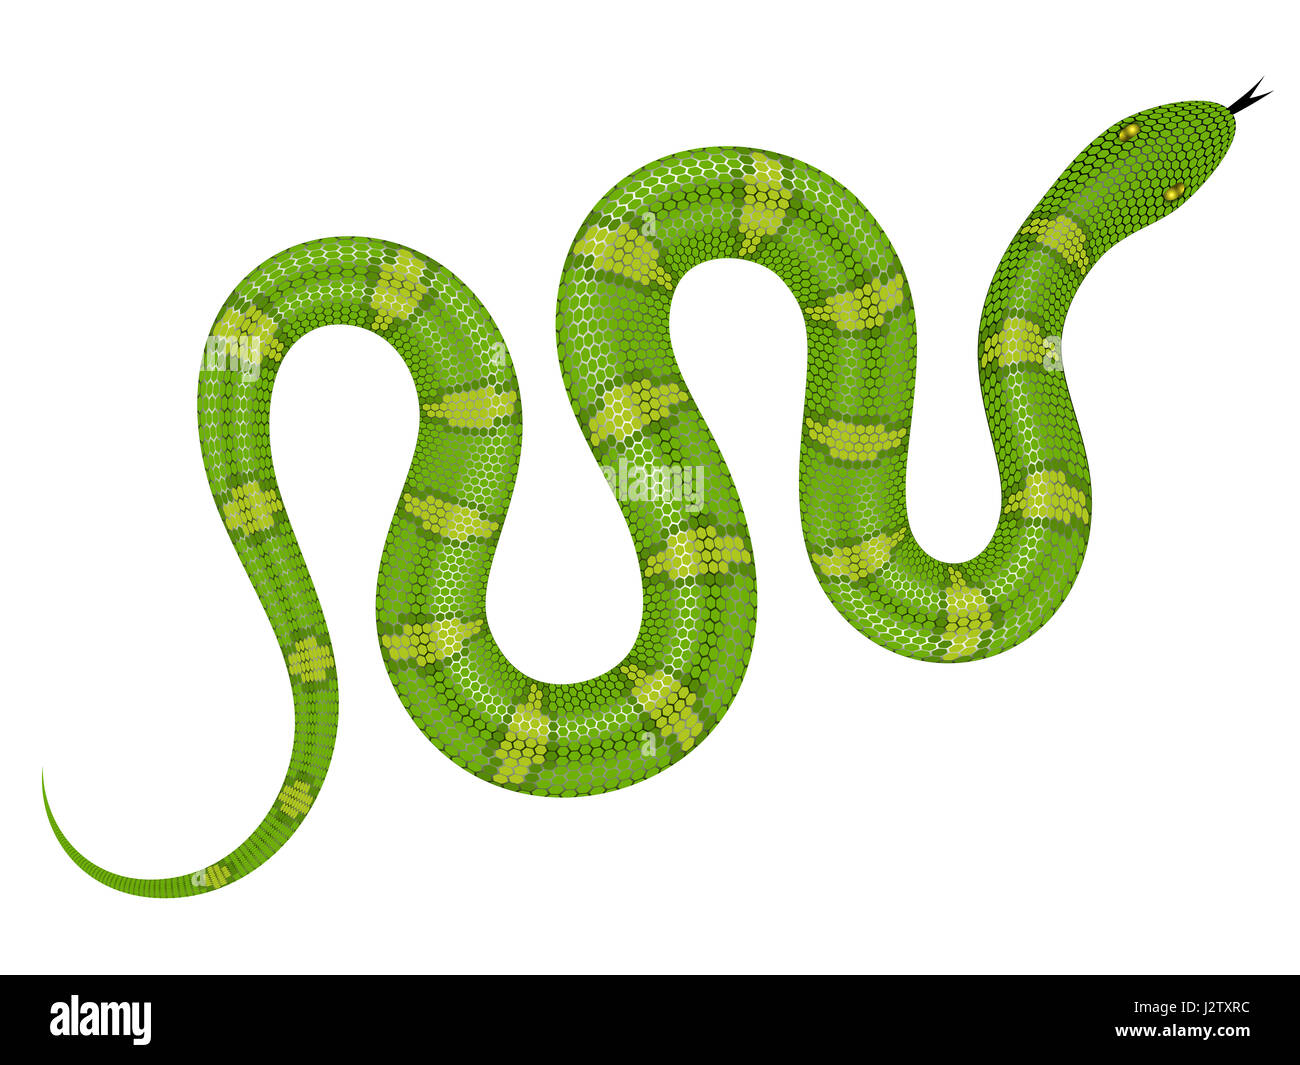 Serpent vert illustration. Serpent isolé sur fond blanc Banque D'Images